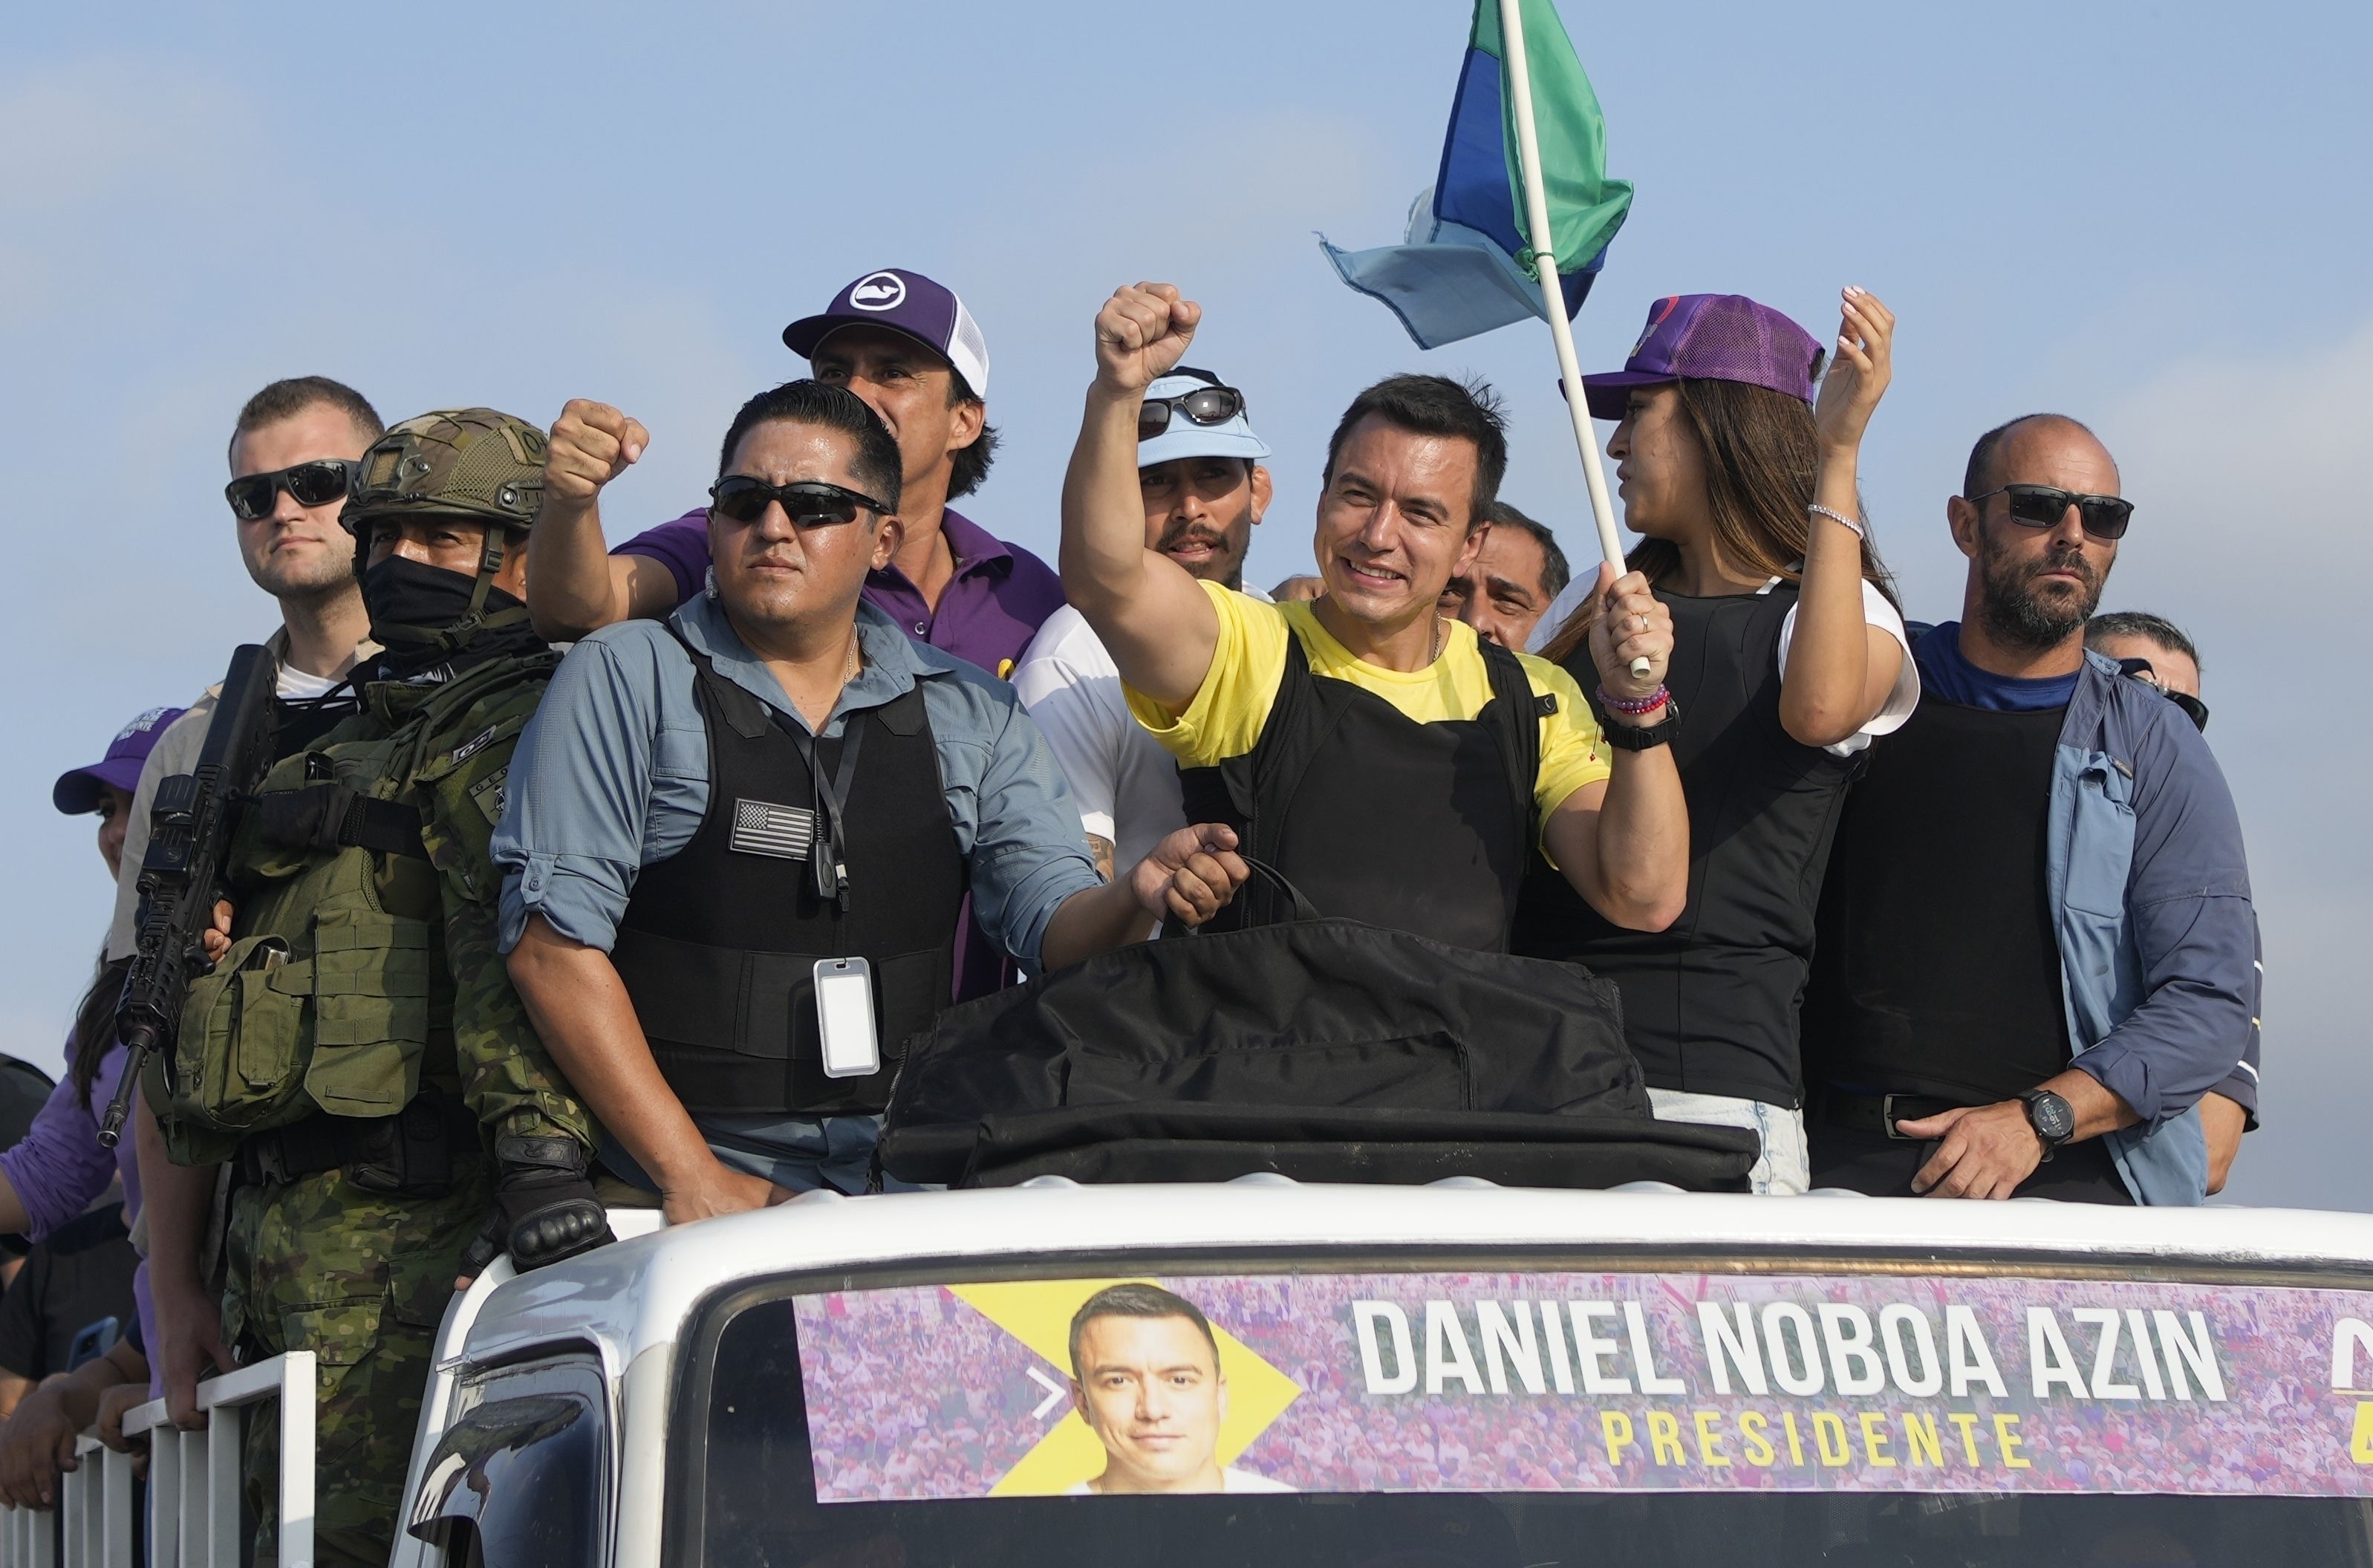 El candidato a la presidencia Daniel Noboa, de Movimiento Acción Democrática Nacional, llega a Carondelet con 35 años (AP foto/Martín Mejía)